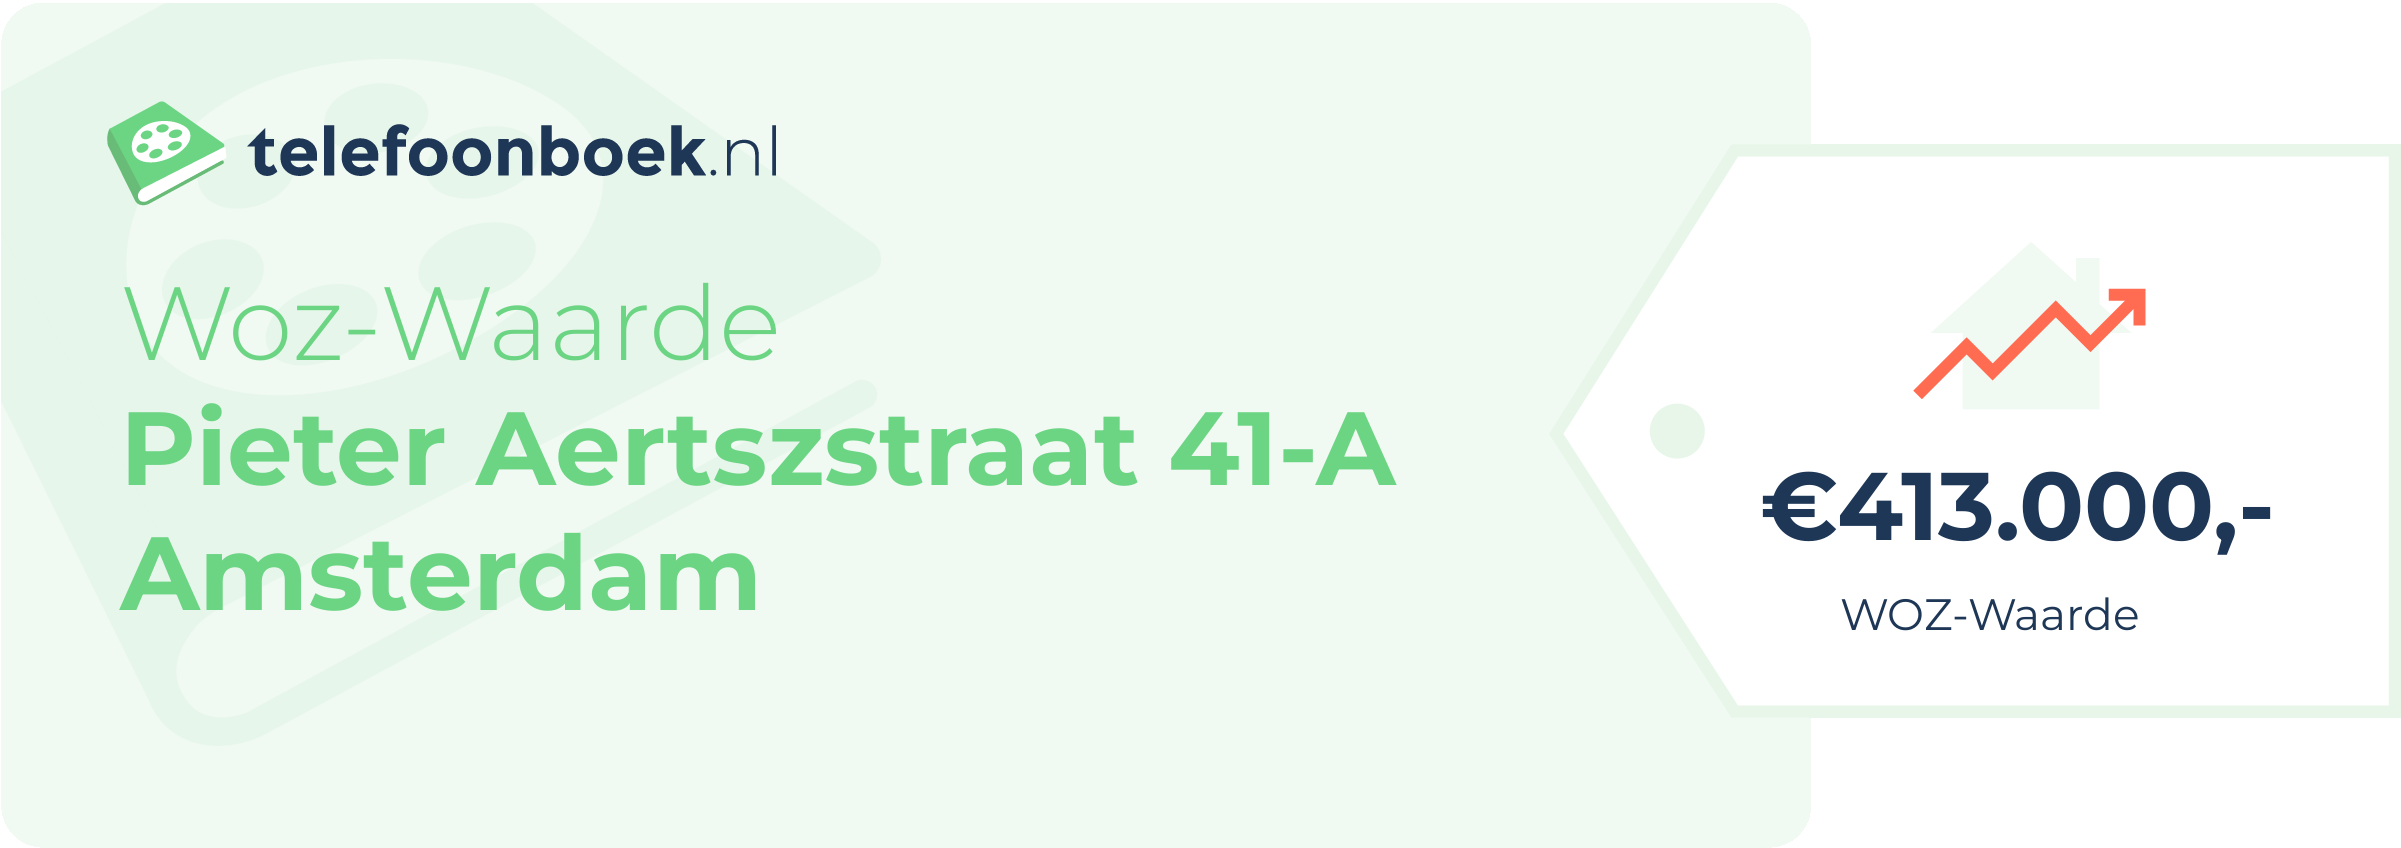 WOZ-waarde Pieter Aertszstraat 41-A Amsterdam